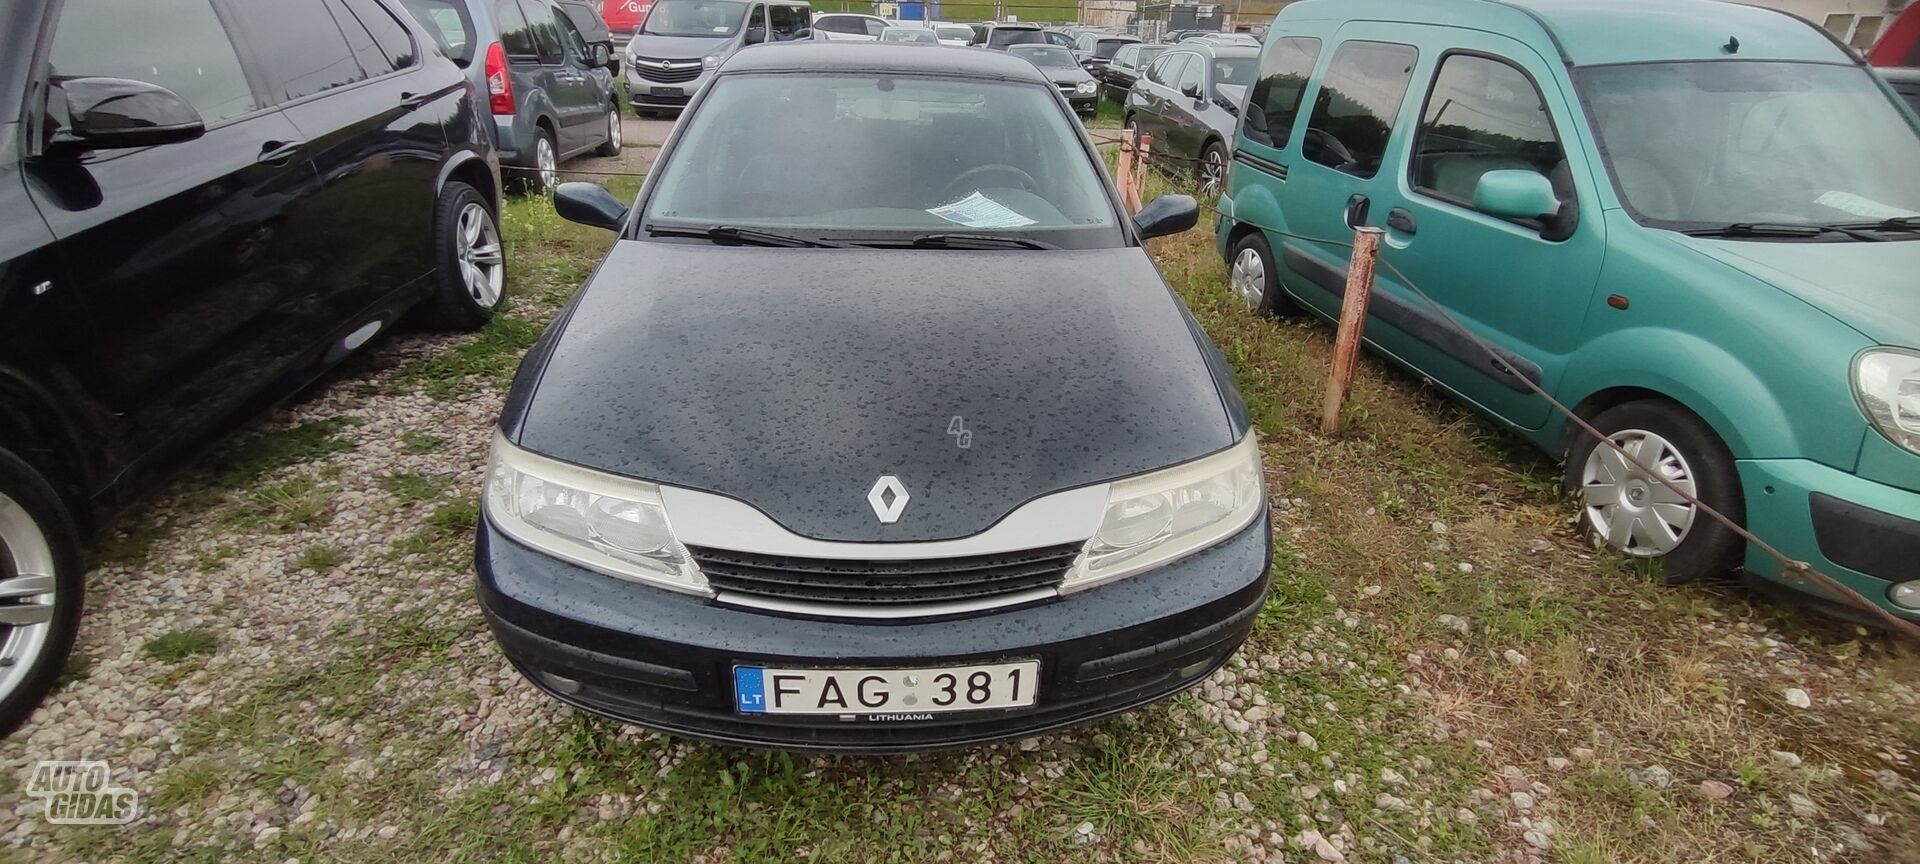 Renault Laguna 2002 y Hatchback